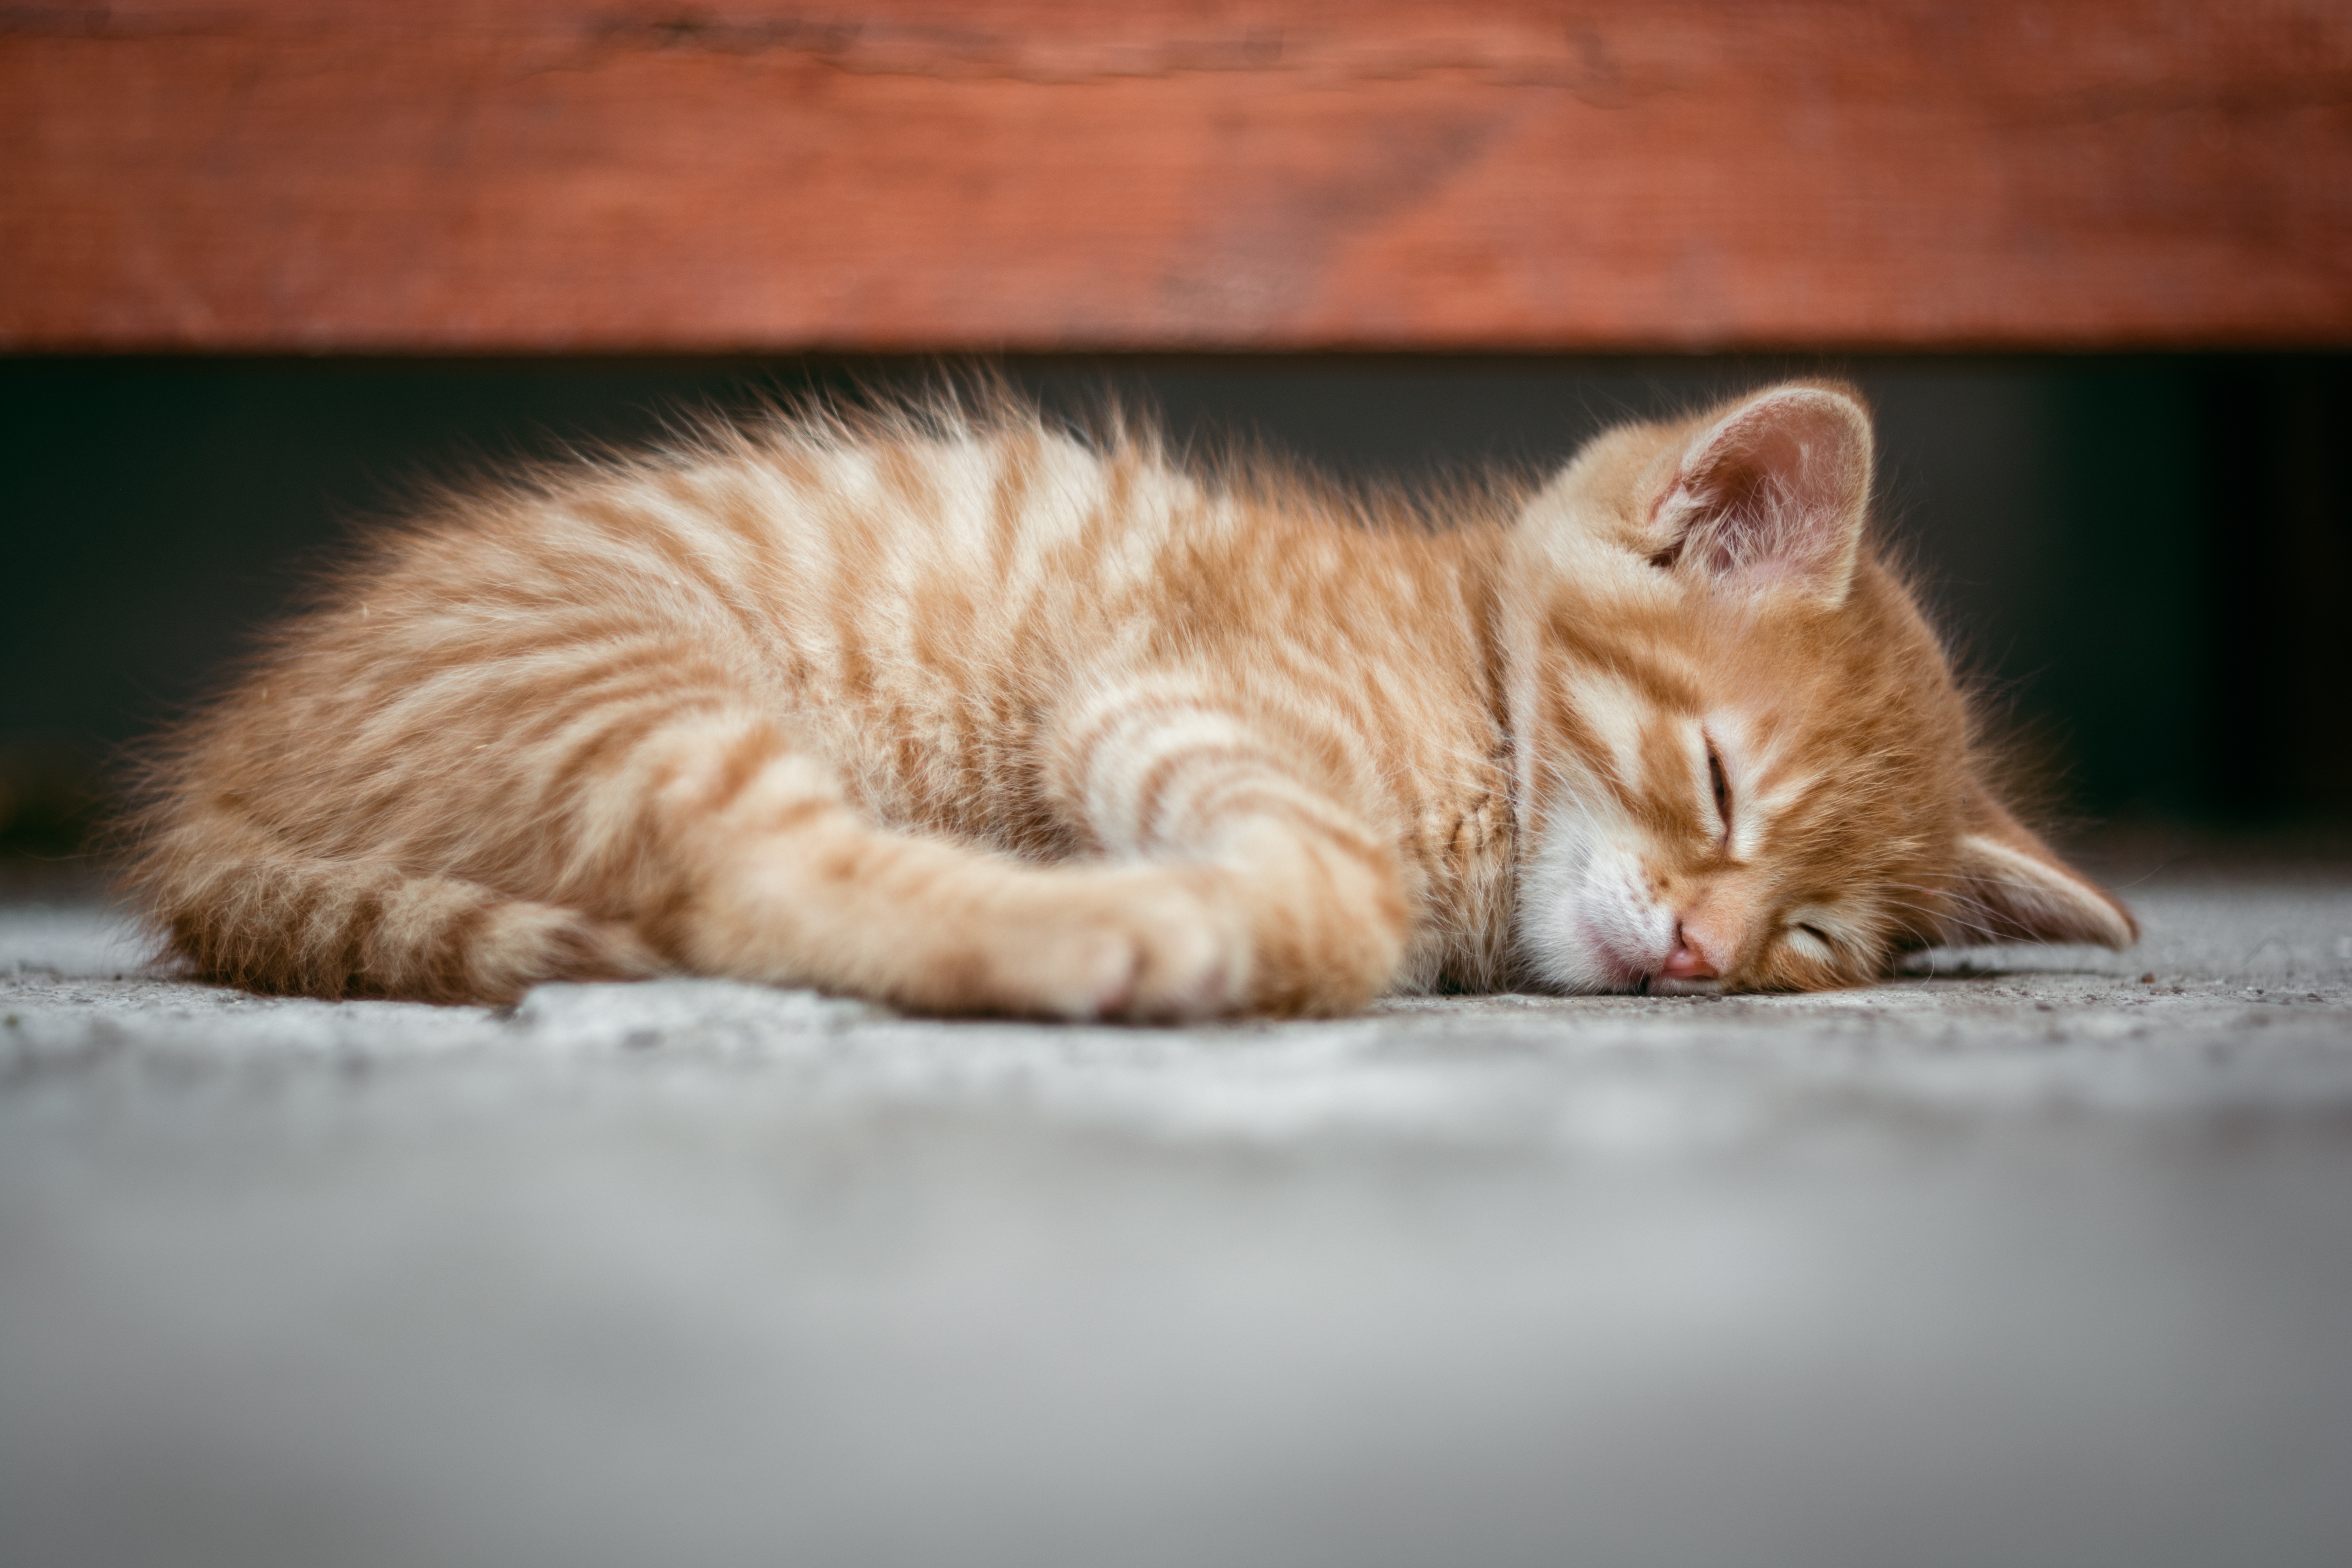 Sleeping Baby Animal Kitten Pet 5944x3963